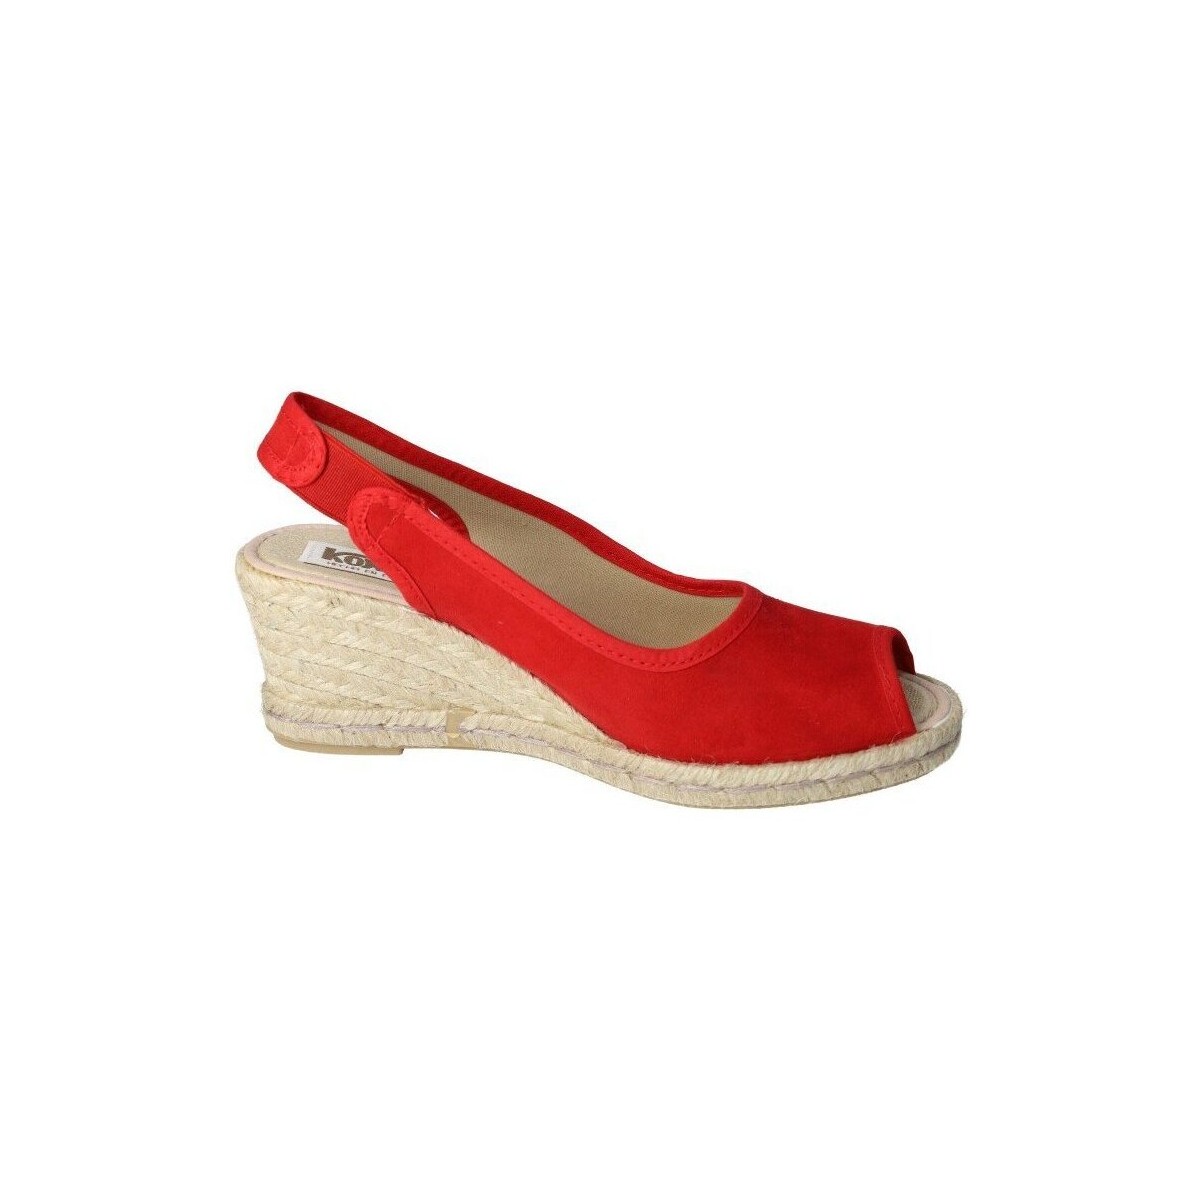 Sapatos Mulher Marca em destaque  Vermelho